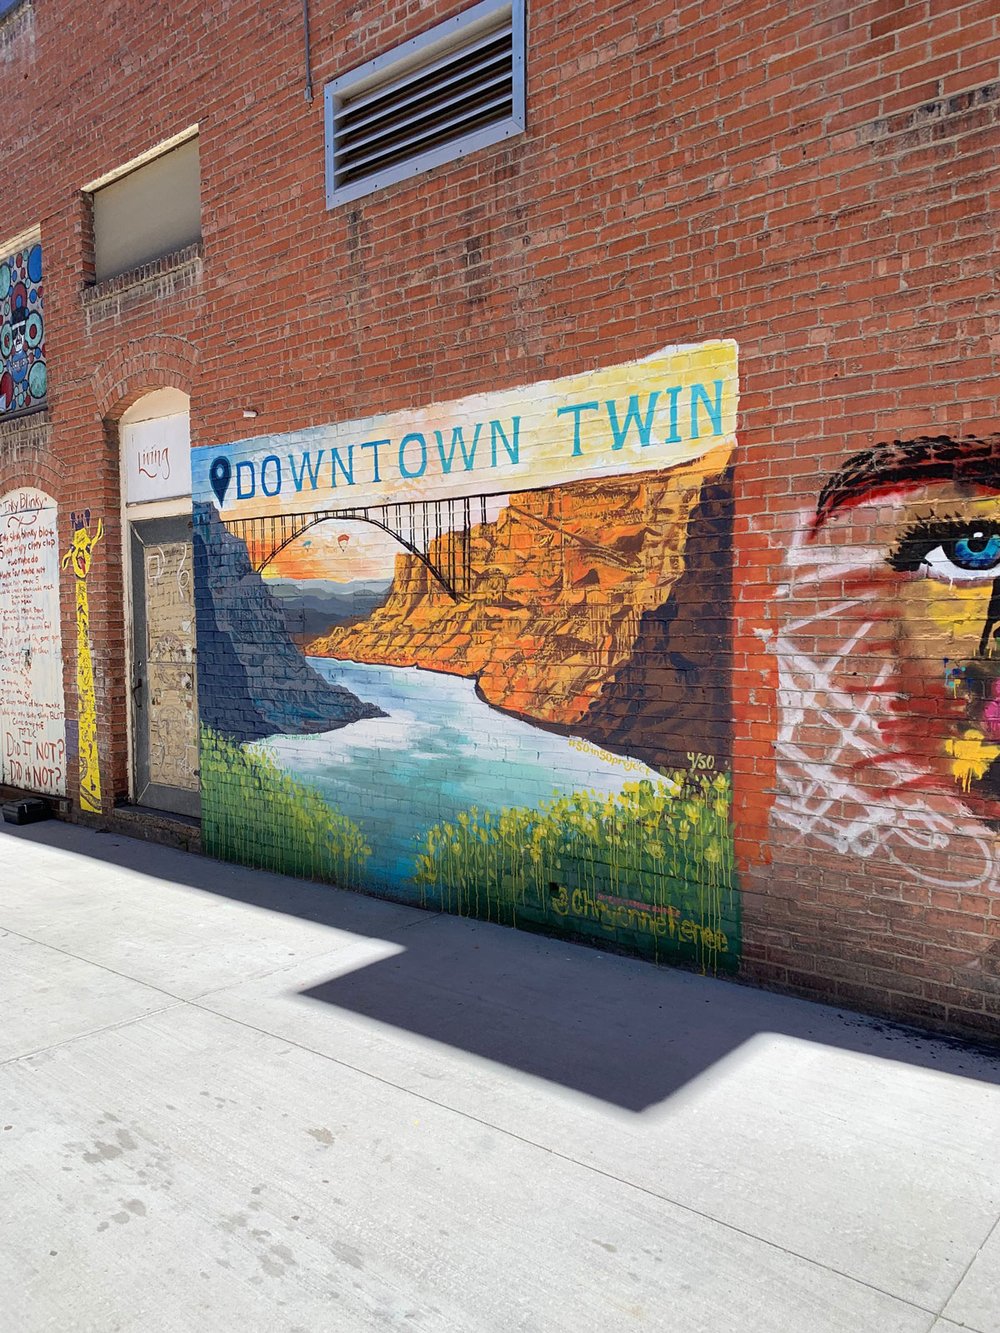 Street art of the Twin Falls bridge on a brick wall.